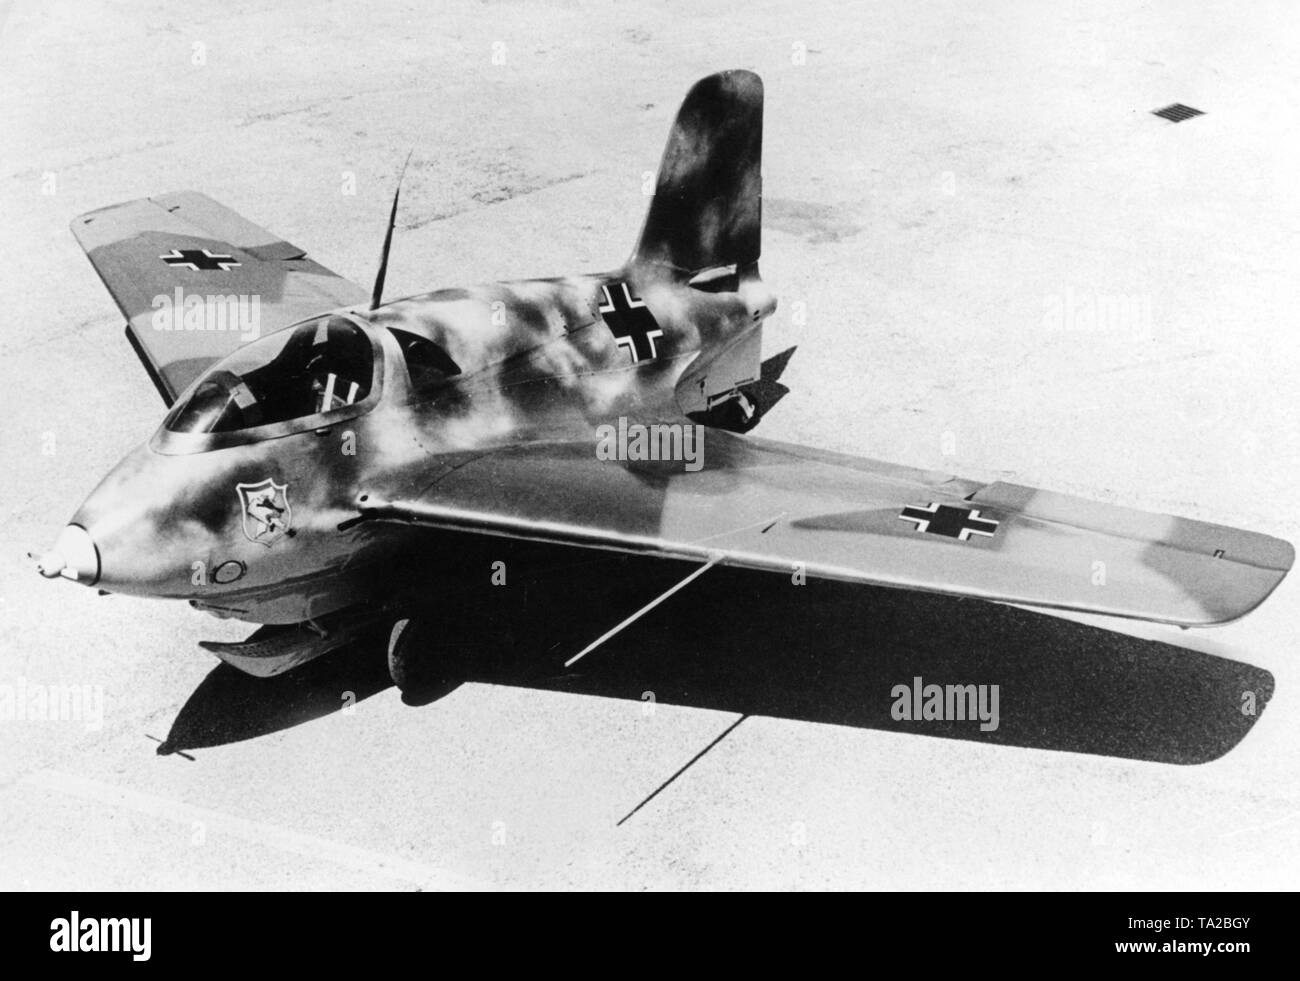 Jet fighter - Messerschmitt Me 163 Stockfoto